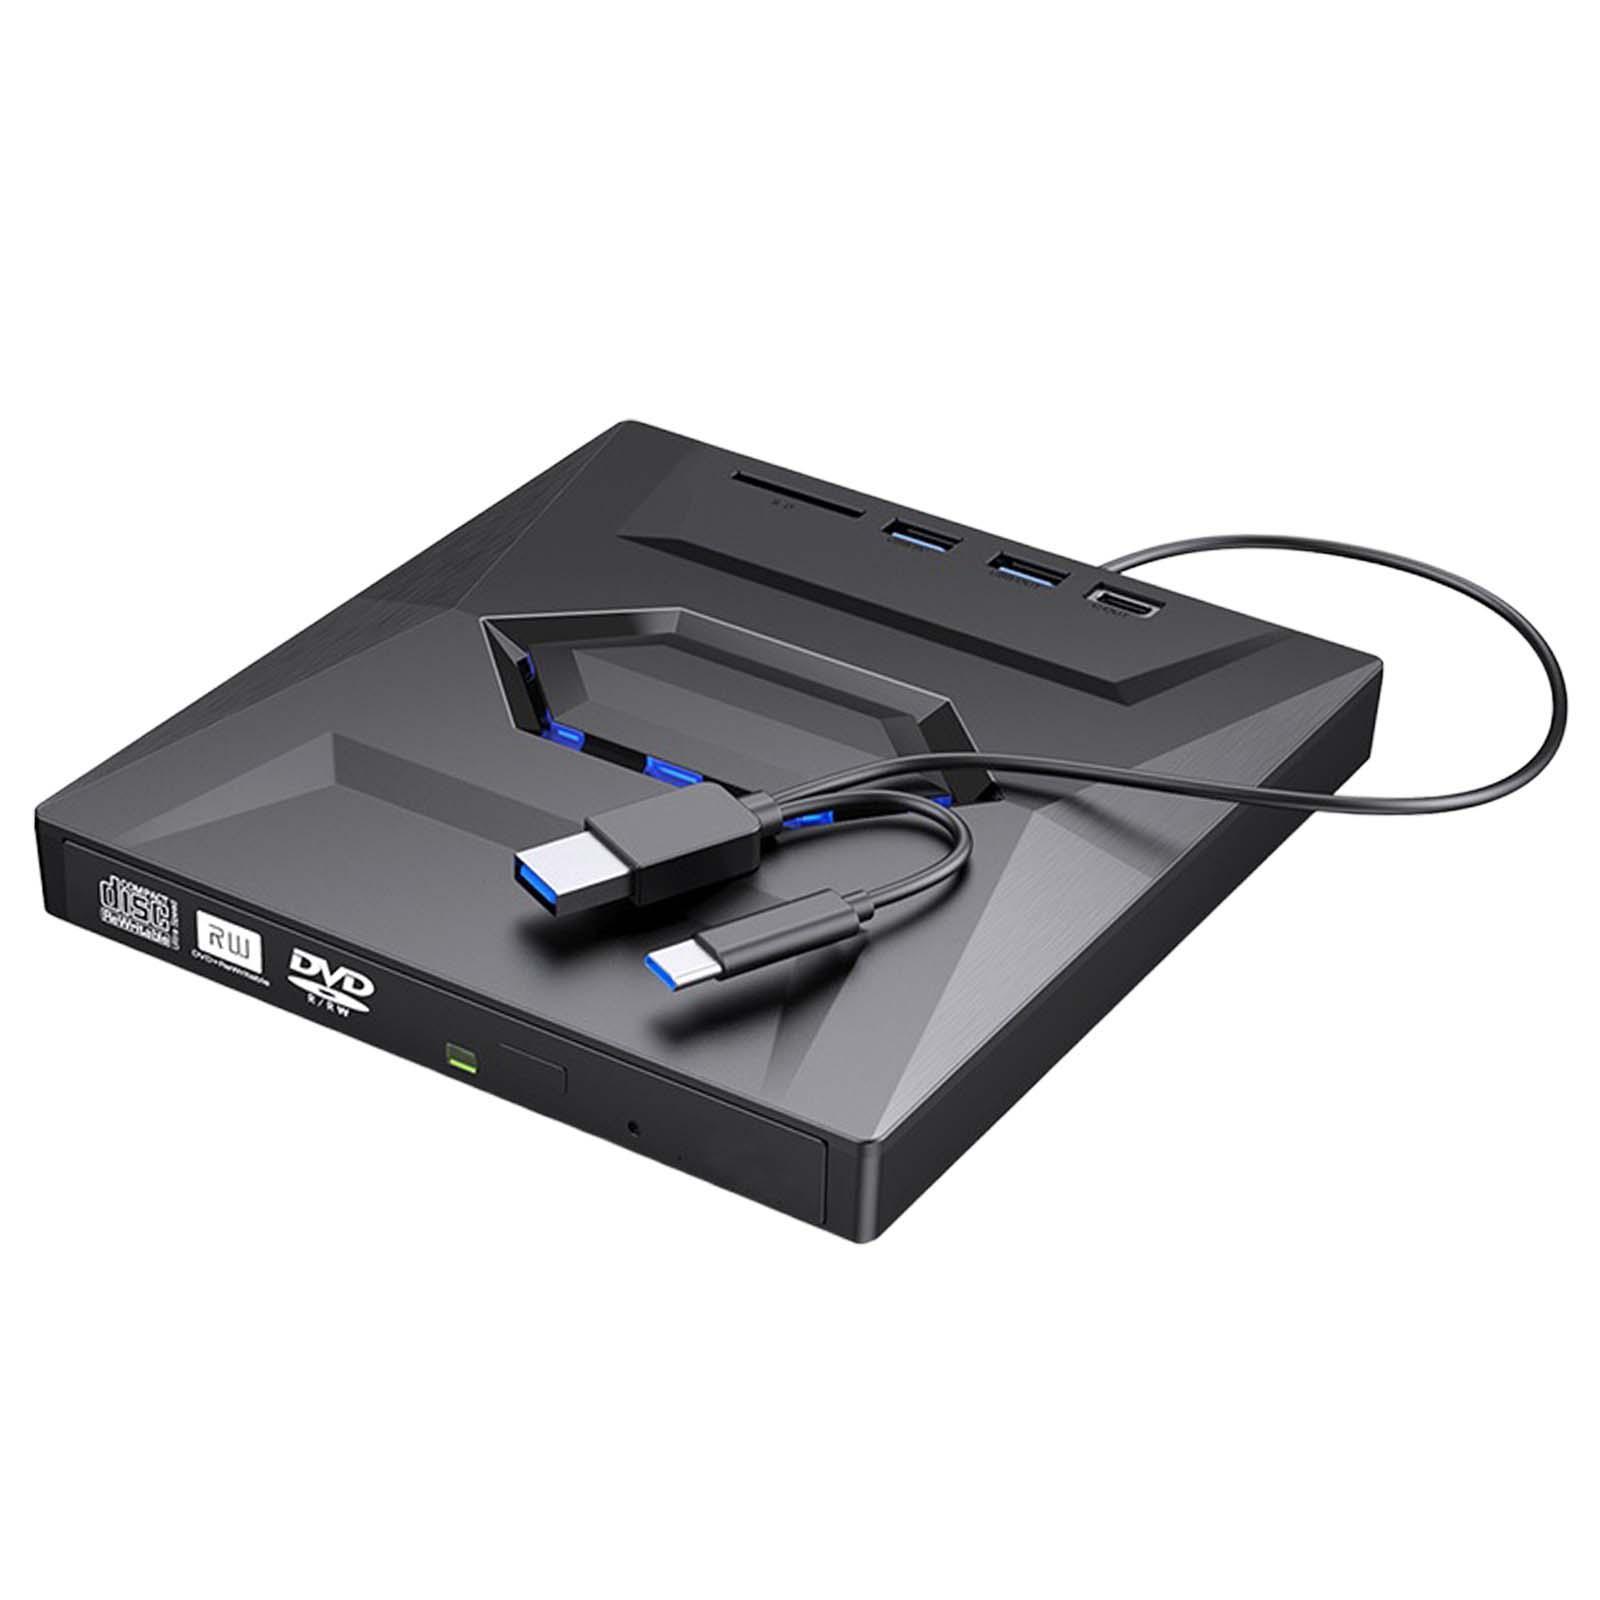 Hình ảnh Computer Drive Burner Reader USB 3.0 for Household Desktop Computer